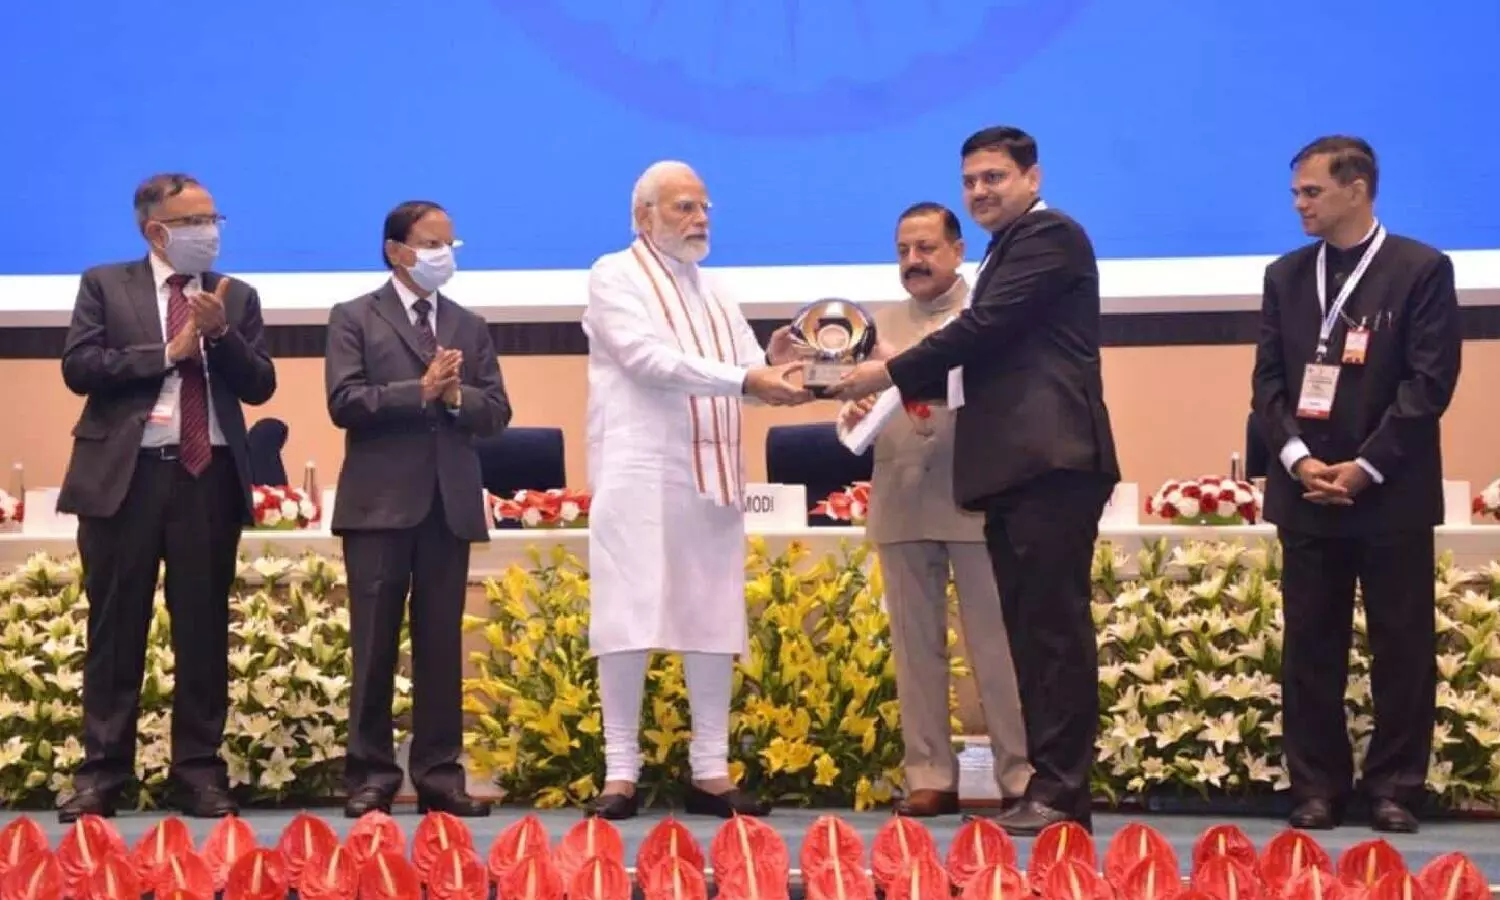 पीएम मोदी डीएम वाराणसी कौशल राज शर्मा को सम्मानित करते हुए